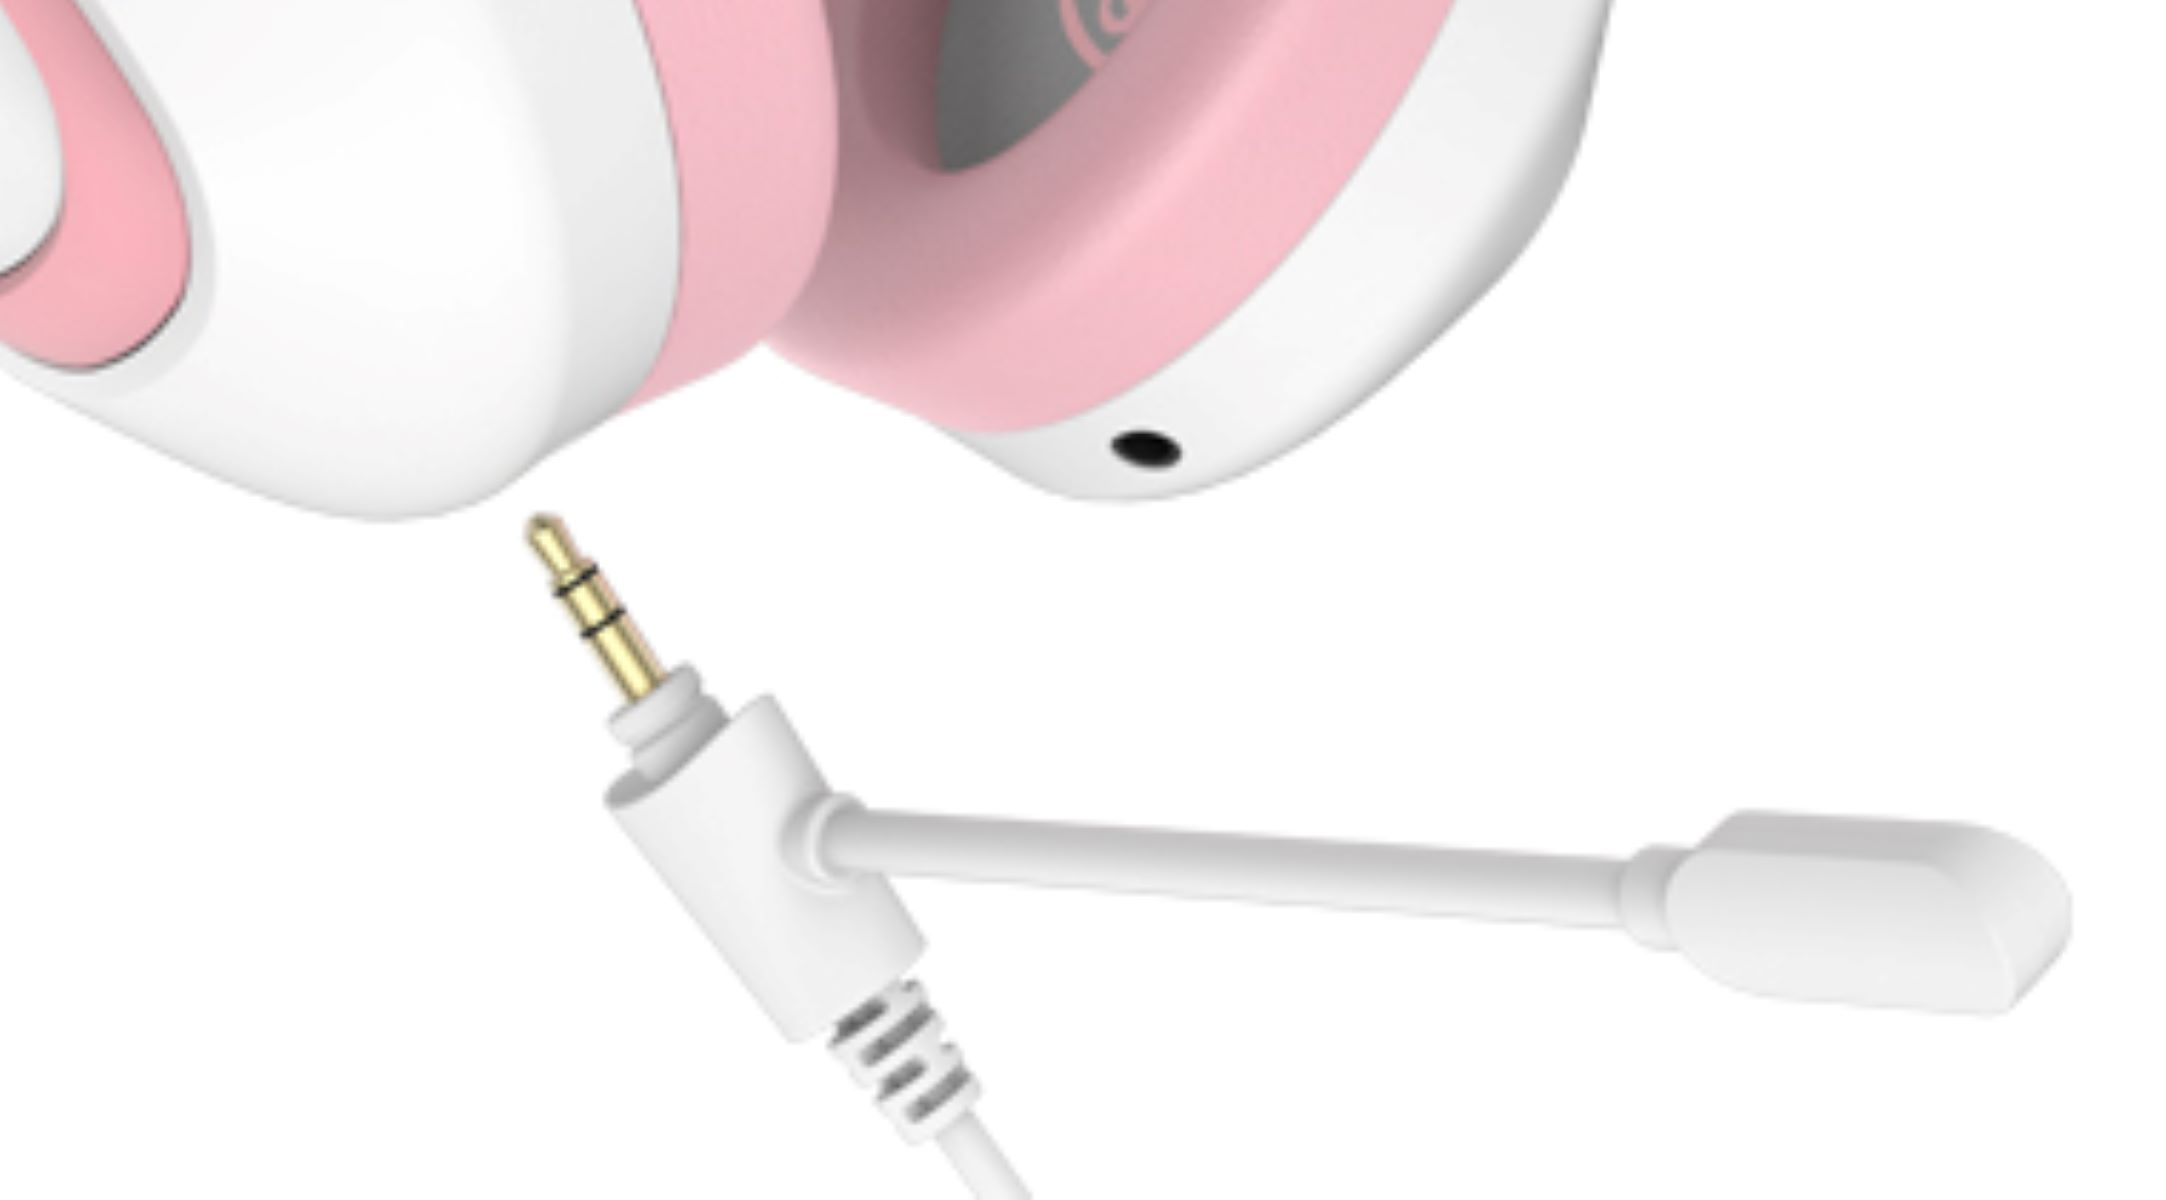 SADES Shaman SA-724, Over-ear Gaming Headset weiß/pink